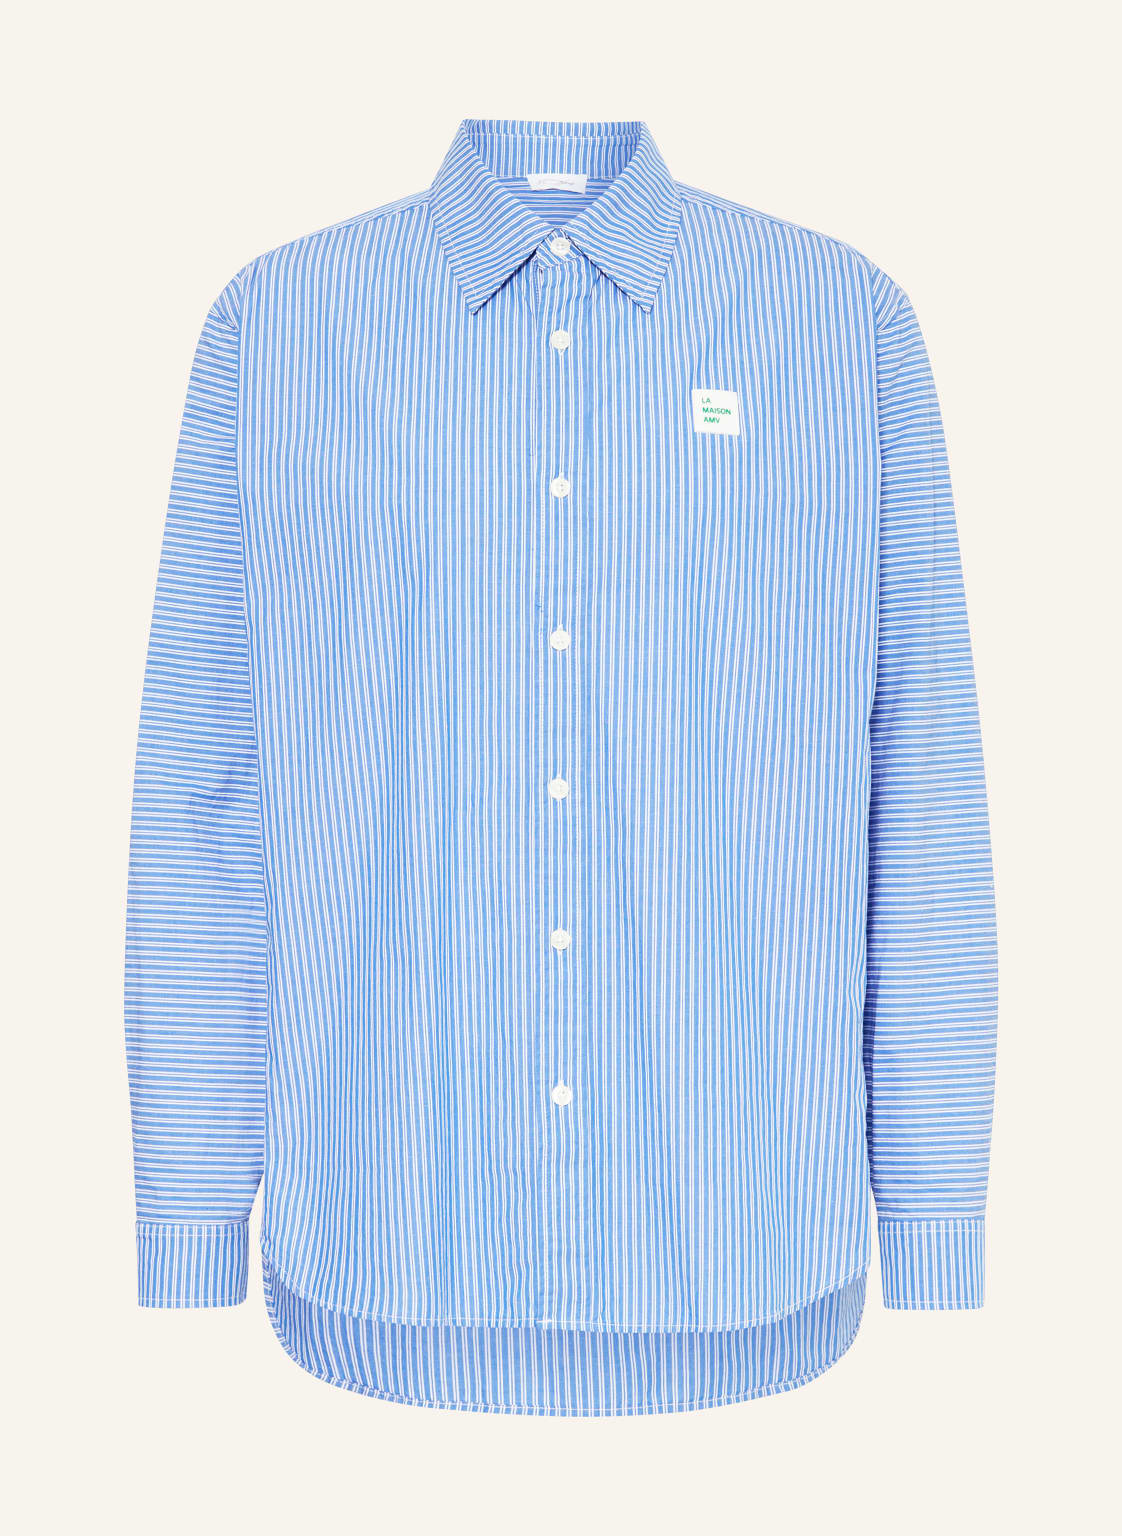 American Vintage Hemd Zatybay Comfort Fit blau von American vintage